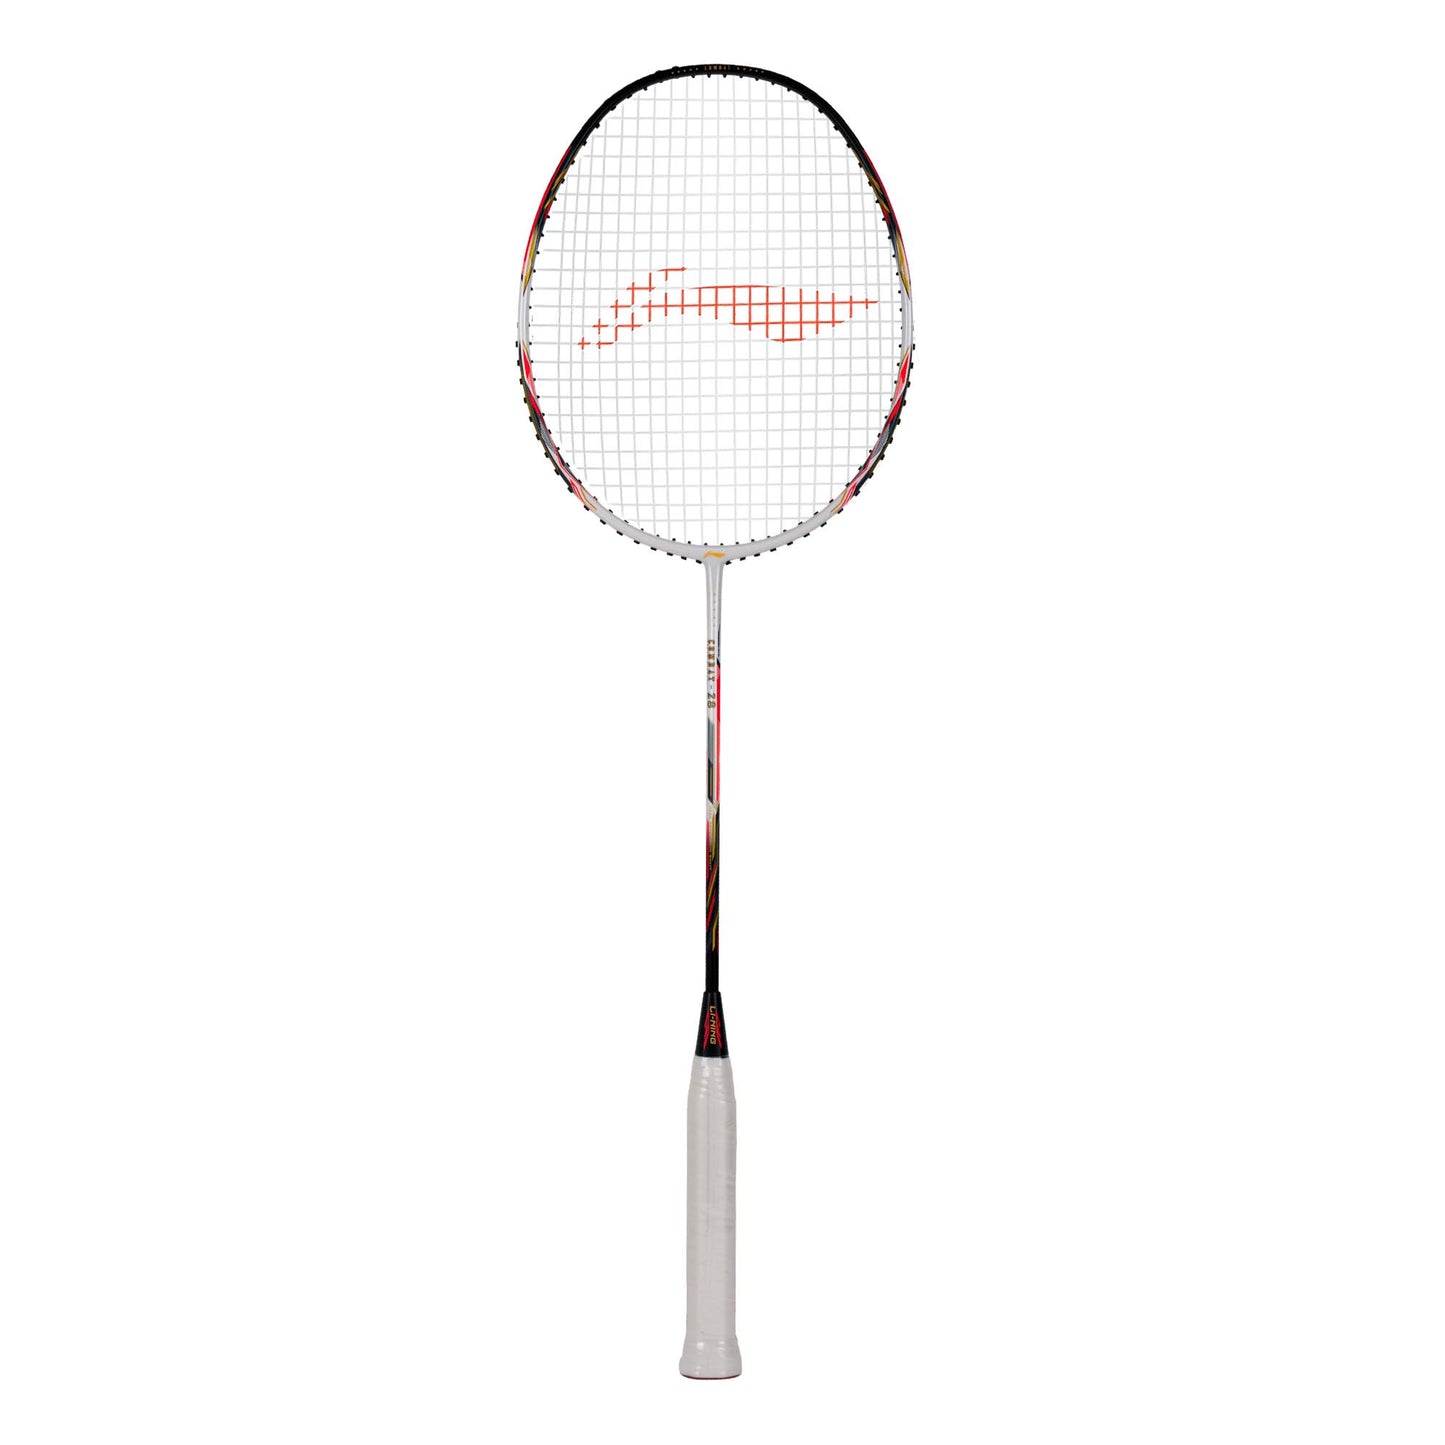 Li-Ning Combat Z8 (White/Black/Orange Red) Badminton Racket